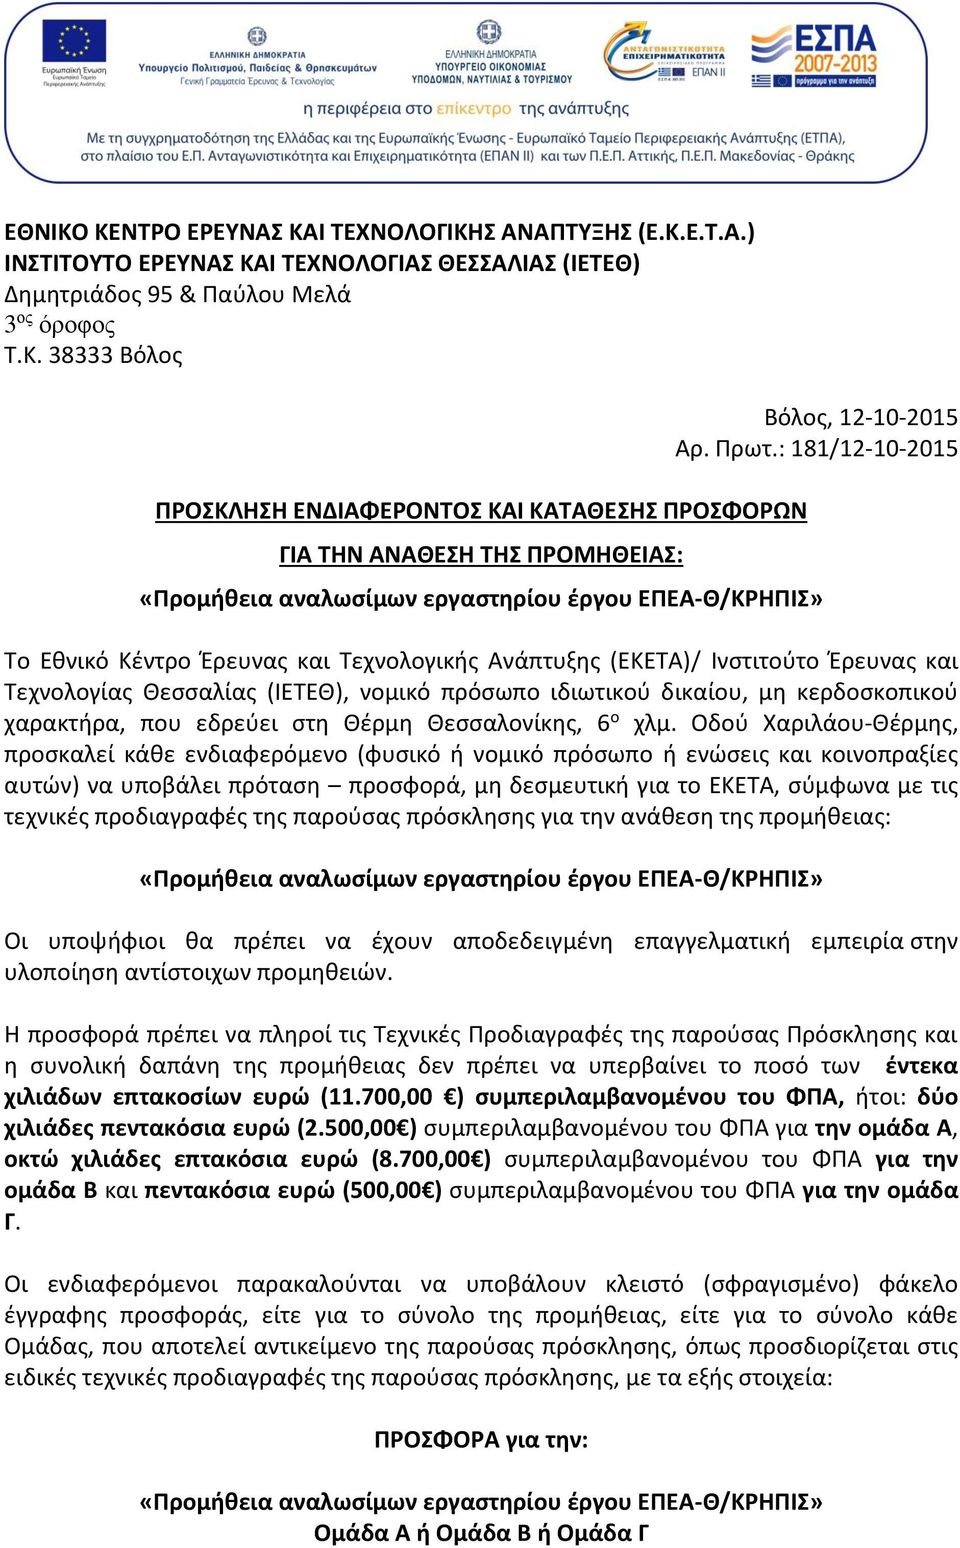 ιδιωτικού δικαίου, μη κερδοσκοπικού χαρακτήρα, που εδρεύει στη Θέρμη Θεσσαλονίκης, 6 ο χλμ.